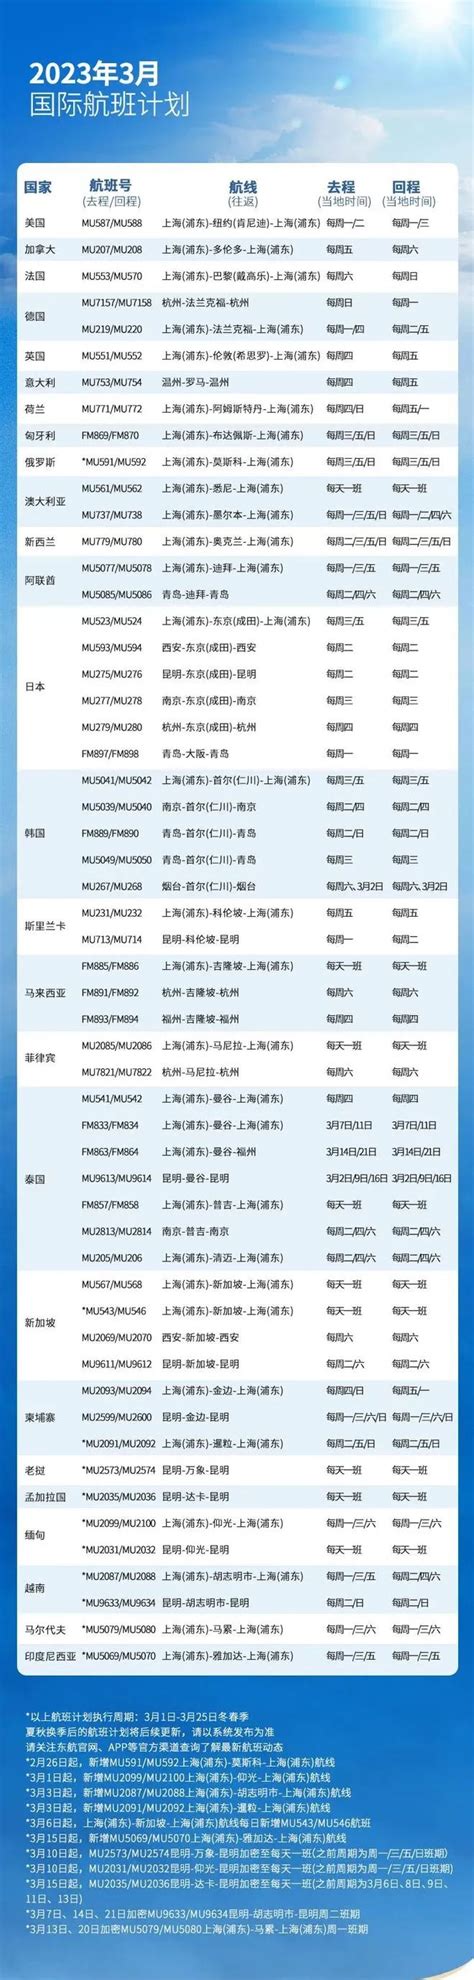 国航恢复多个直航北京航班，现有执行的各项疫情防控政策和措施不变 - 中国民用航空网